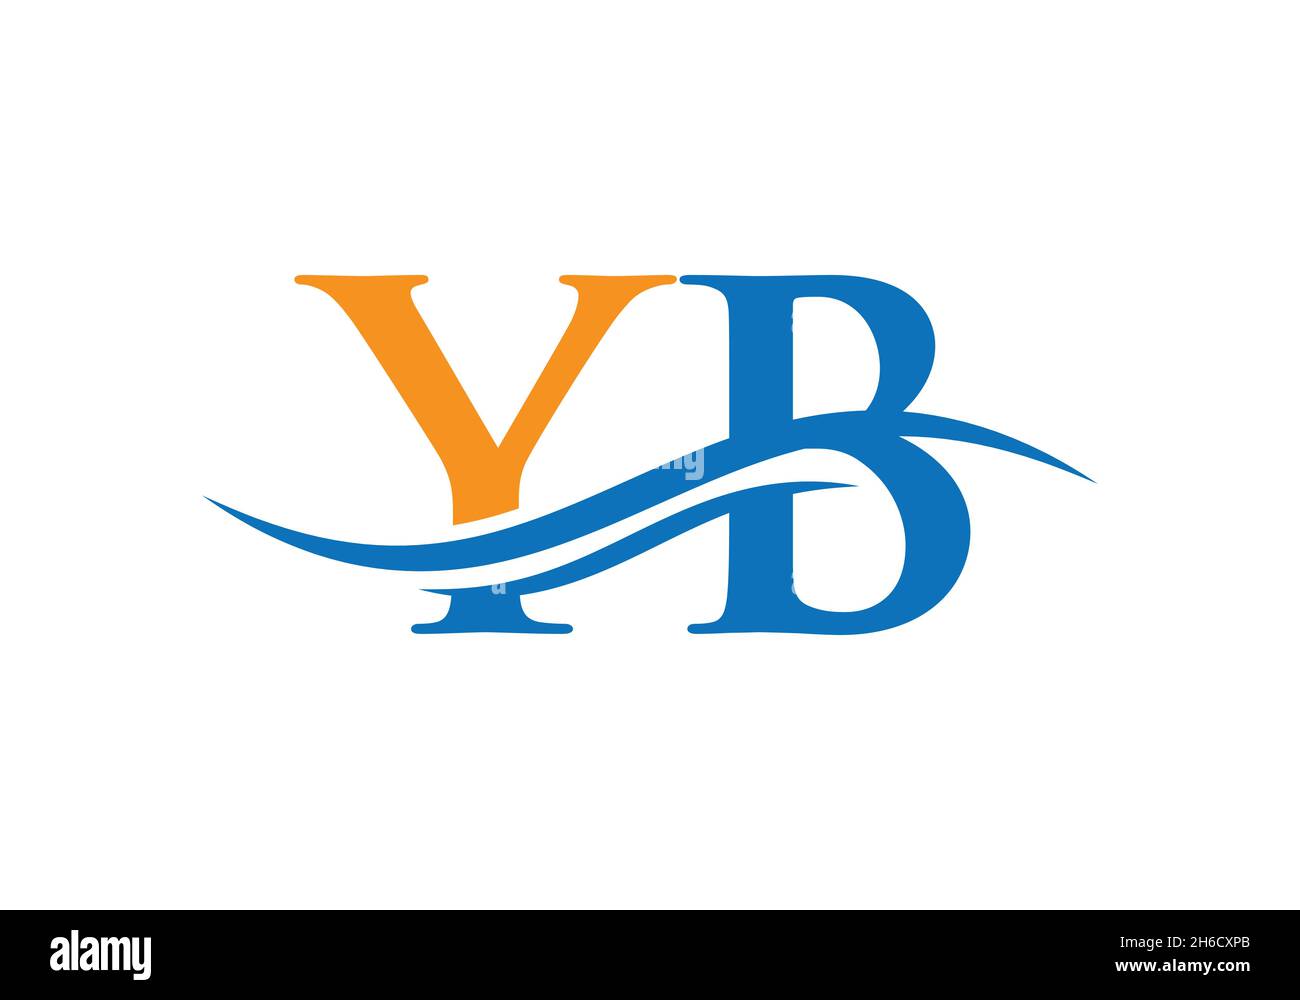 YB-verknüpftes Logo für Geschäfts- und Firmenidentität. Kreativer Buchstabe YB Logo Vektor mit modernen trendigen Stock Vektor